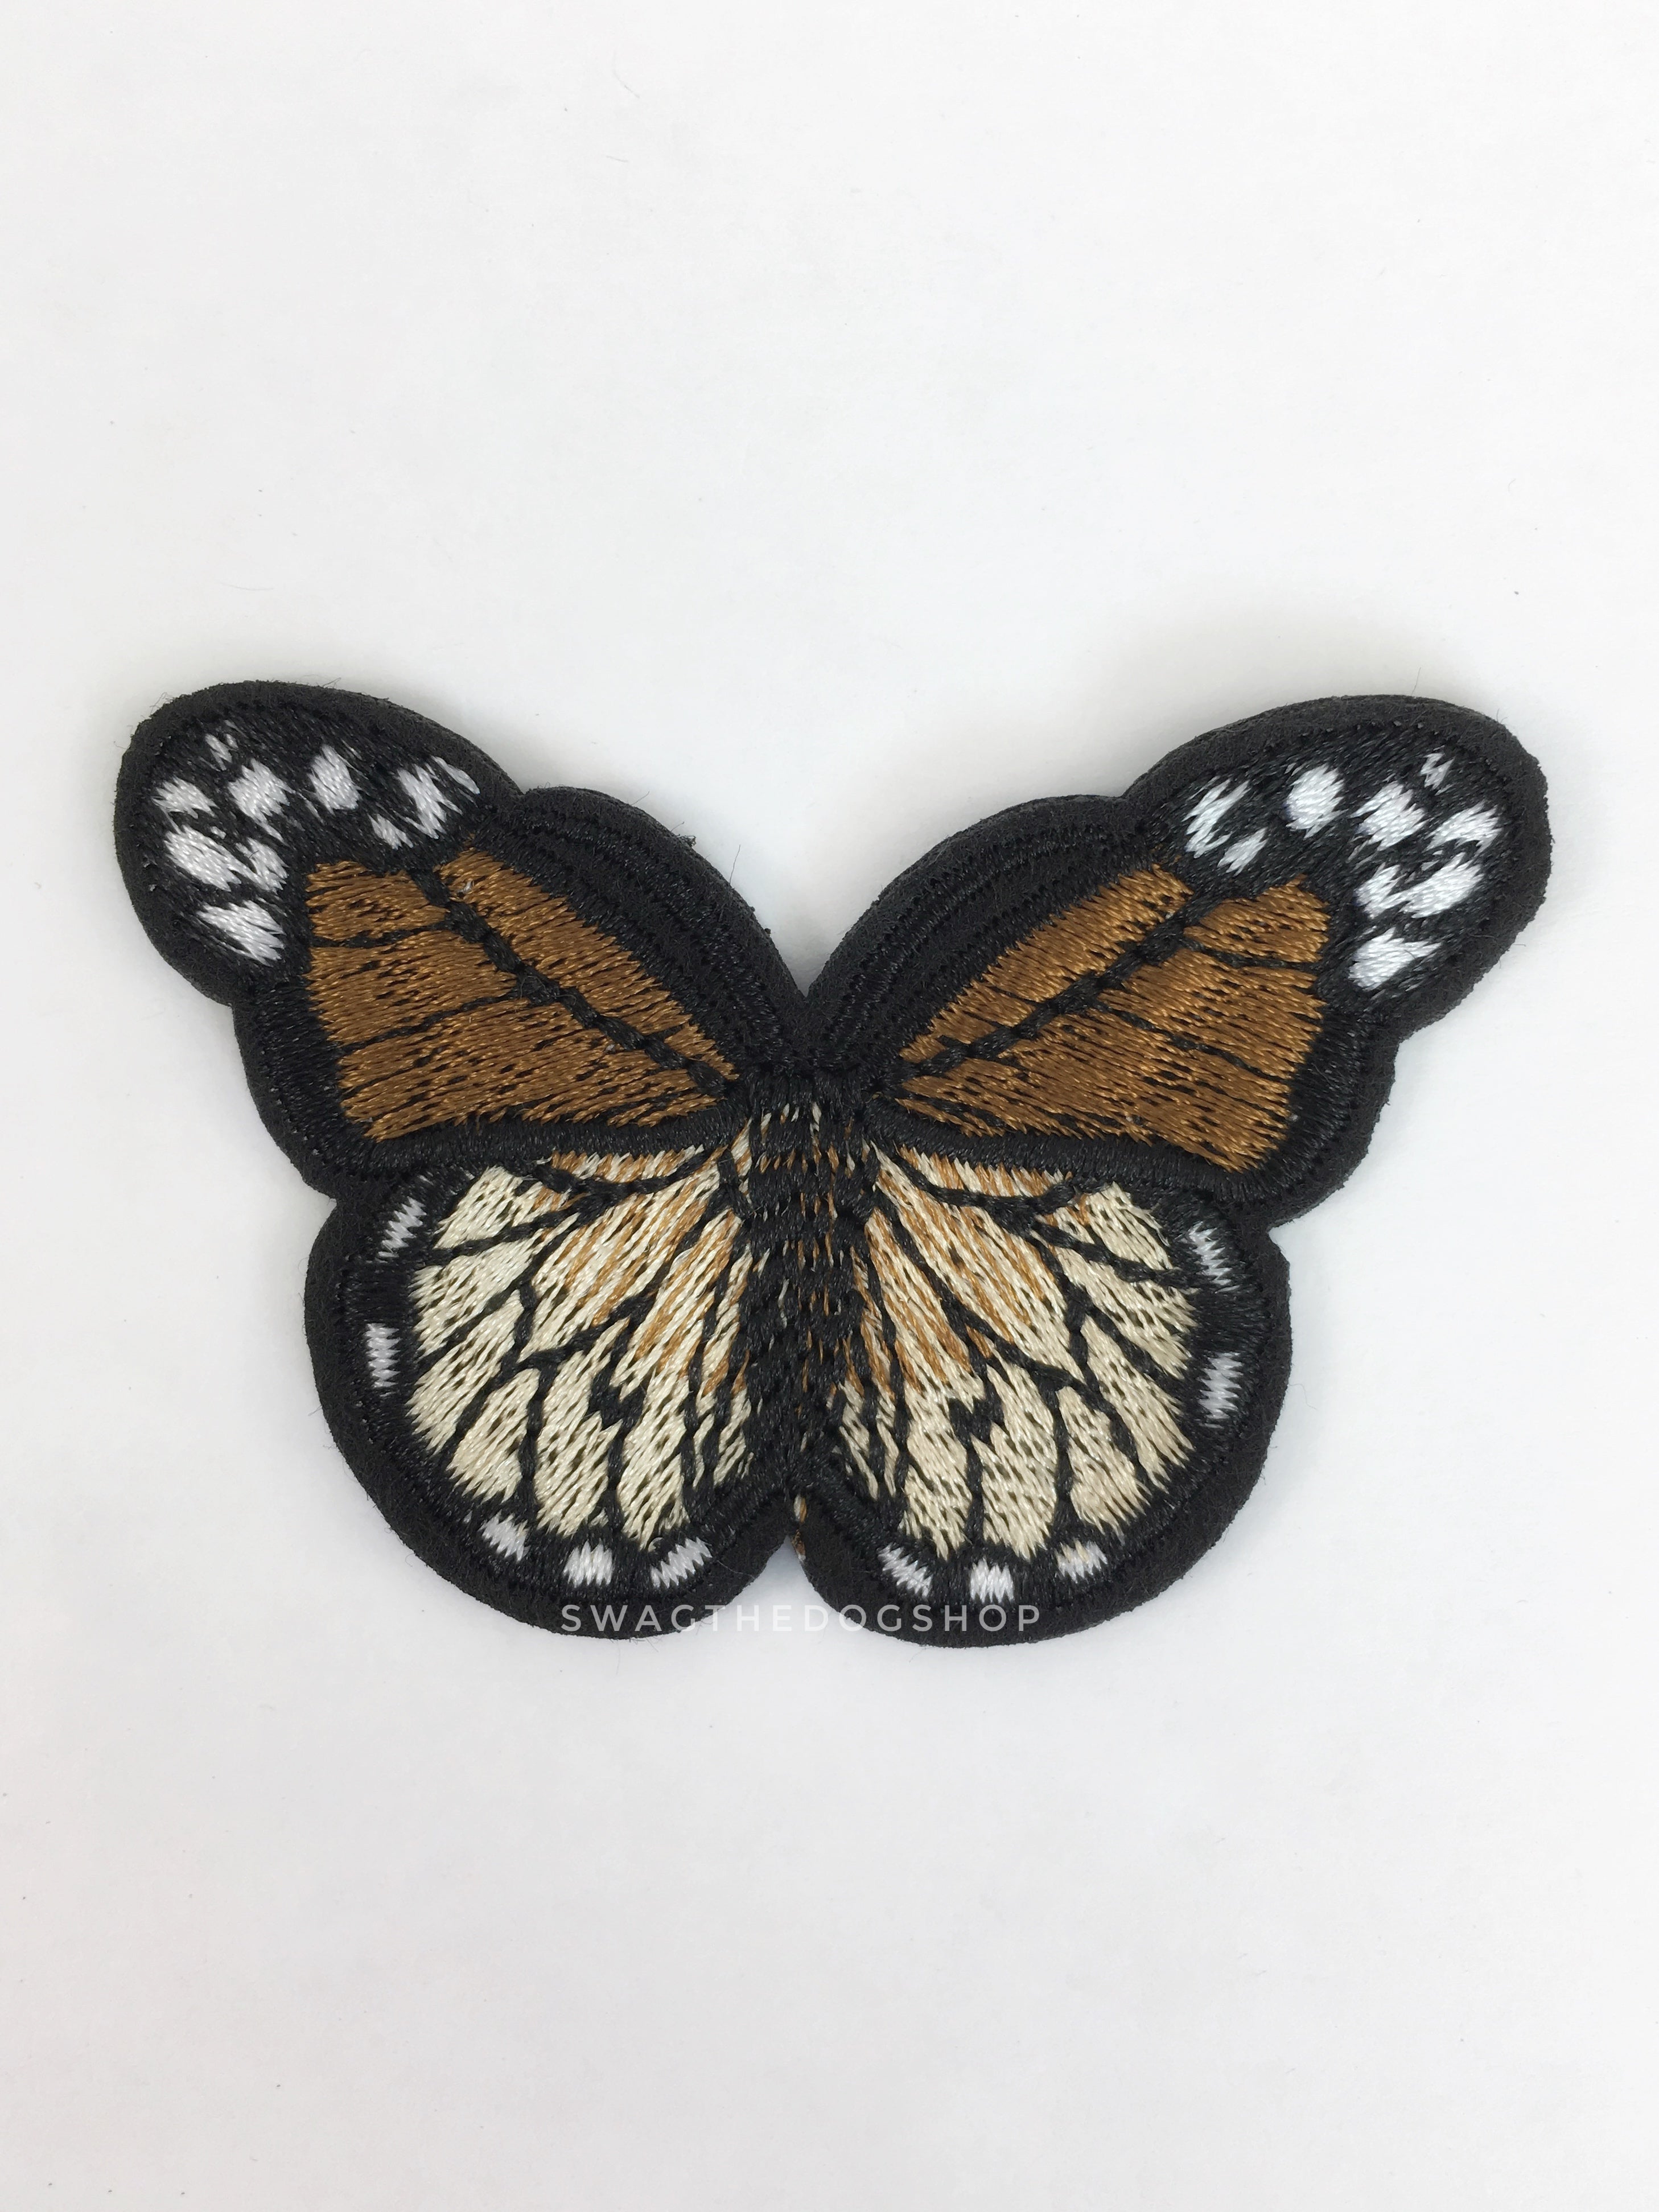 Patch Add-on - Butterflies